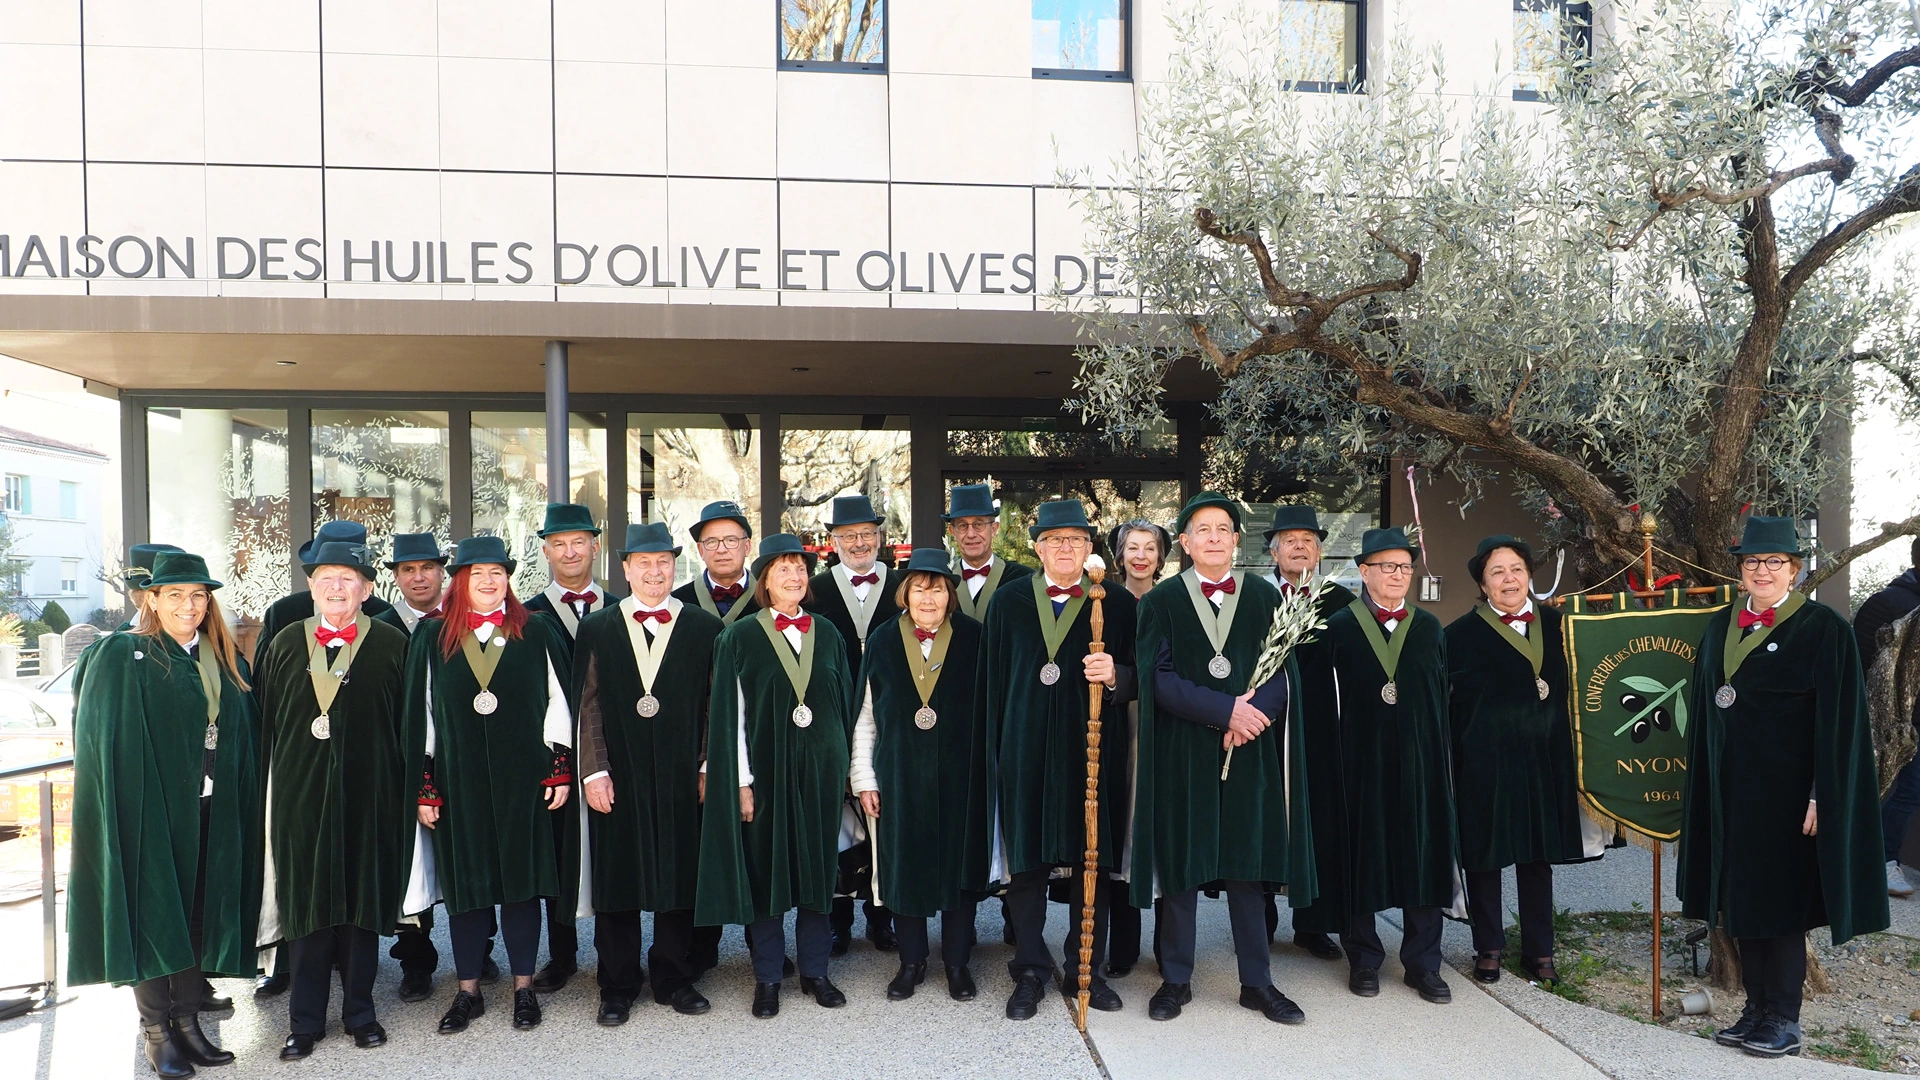 chevaliersdelolivier-nyons, la confrérie des chevaliers de l'olivier de Nyons devant la Maison des Huiles d'olive et Olives de France en 2023